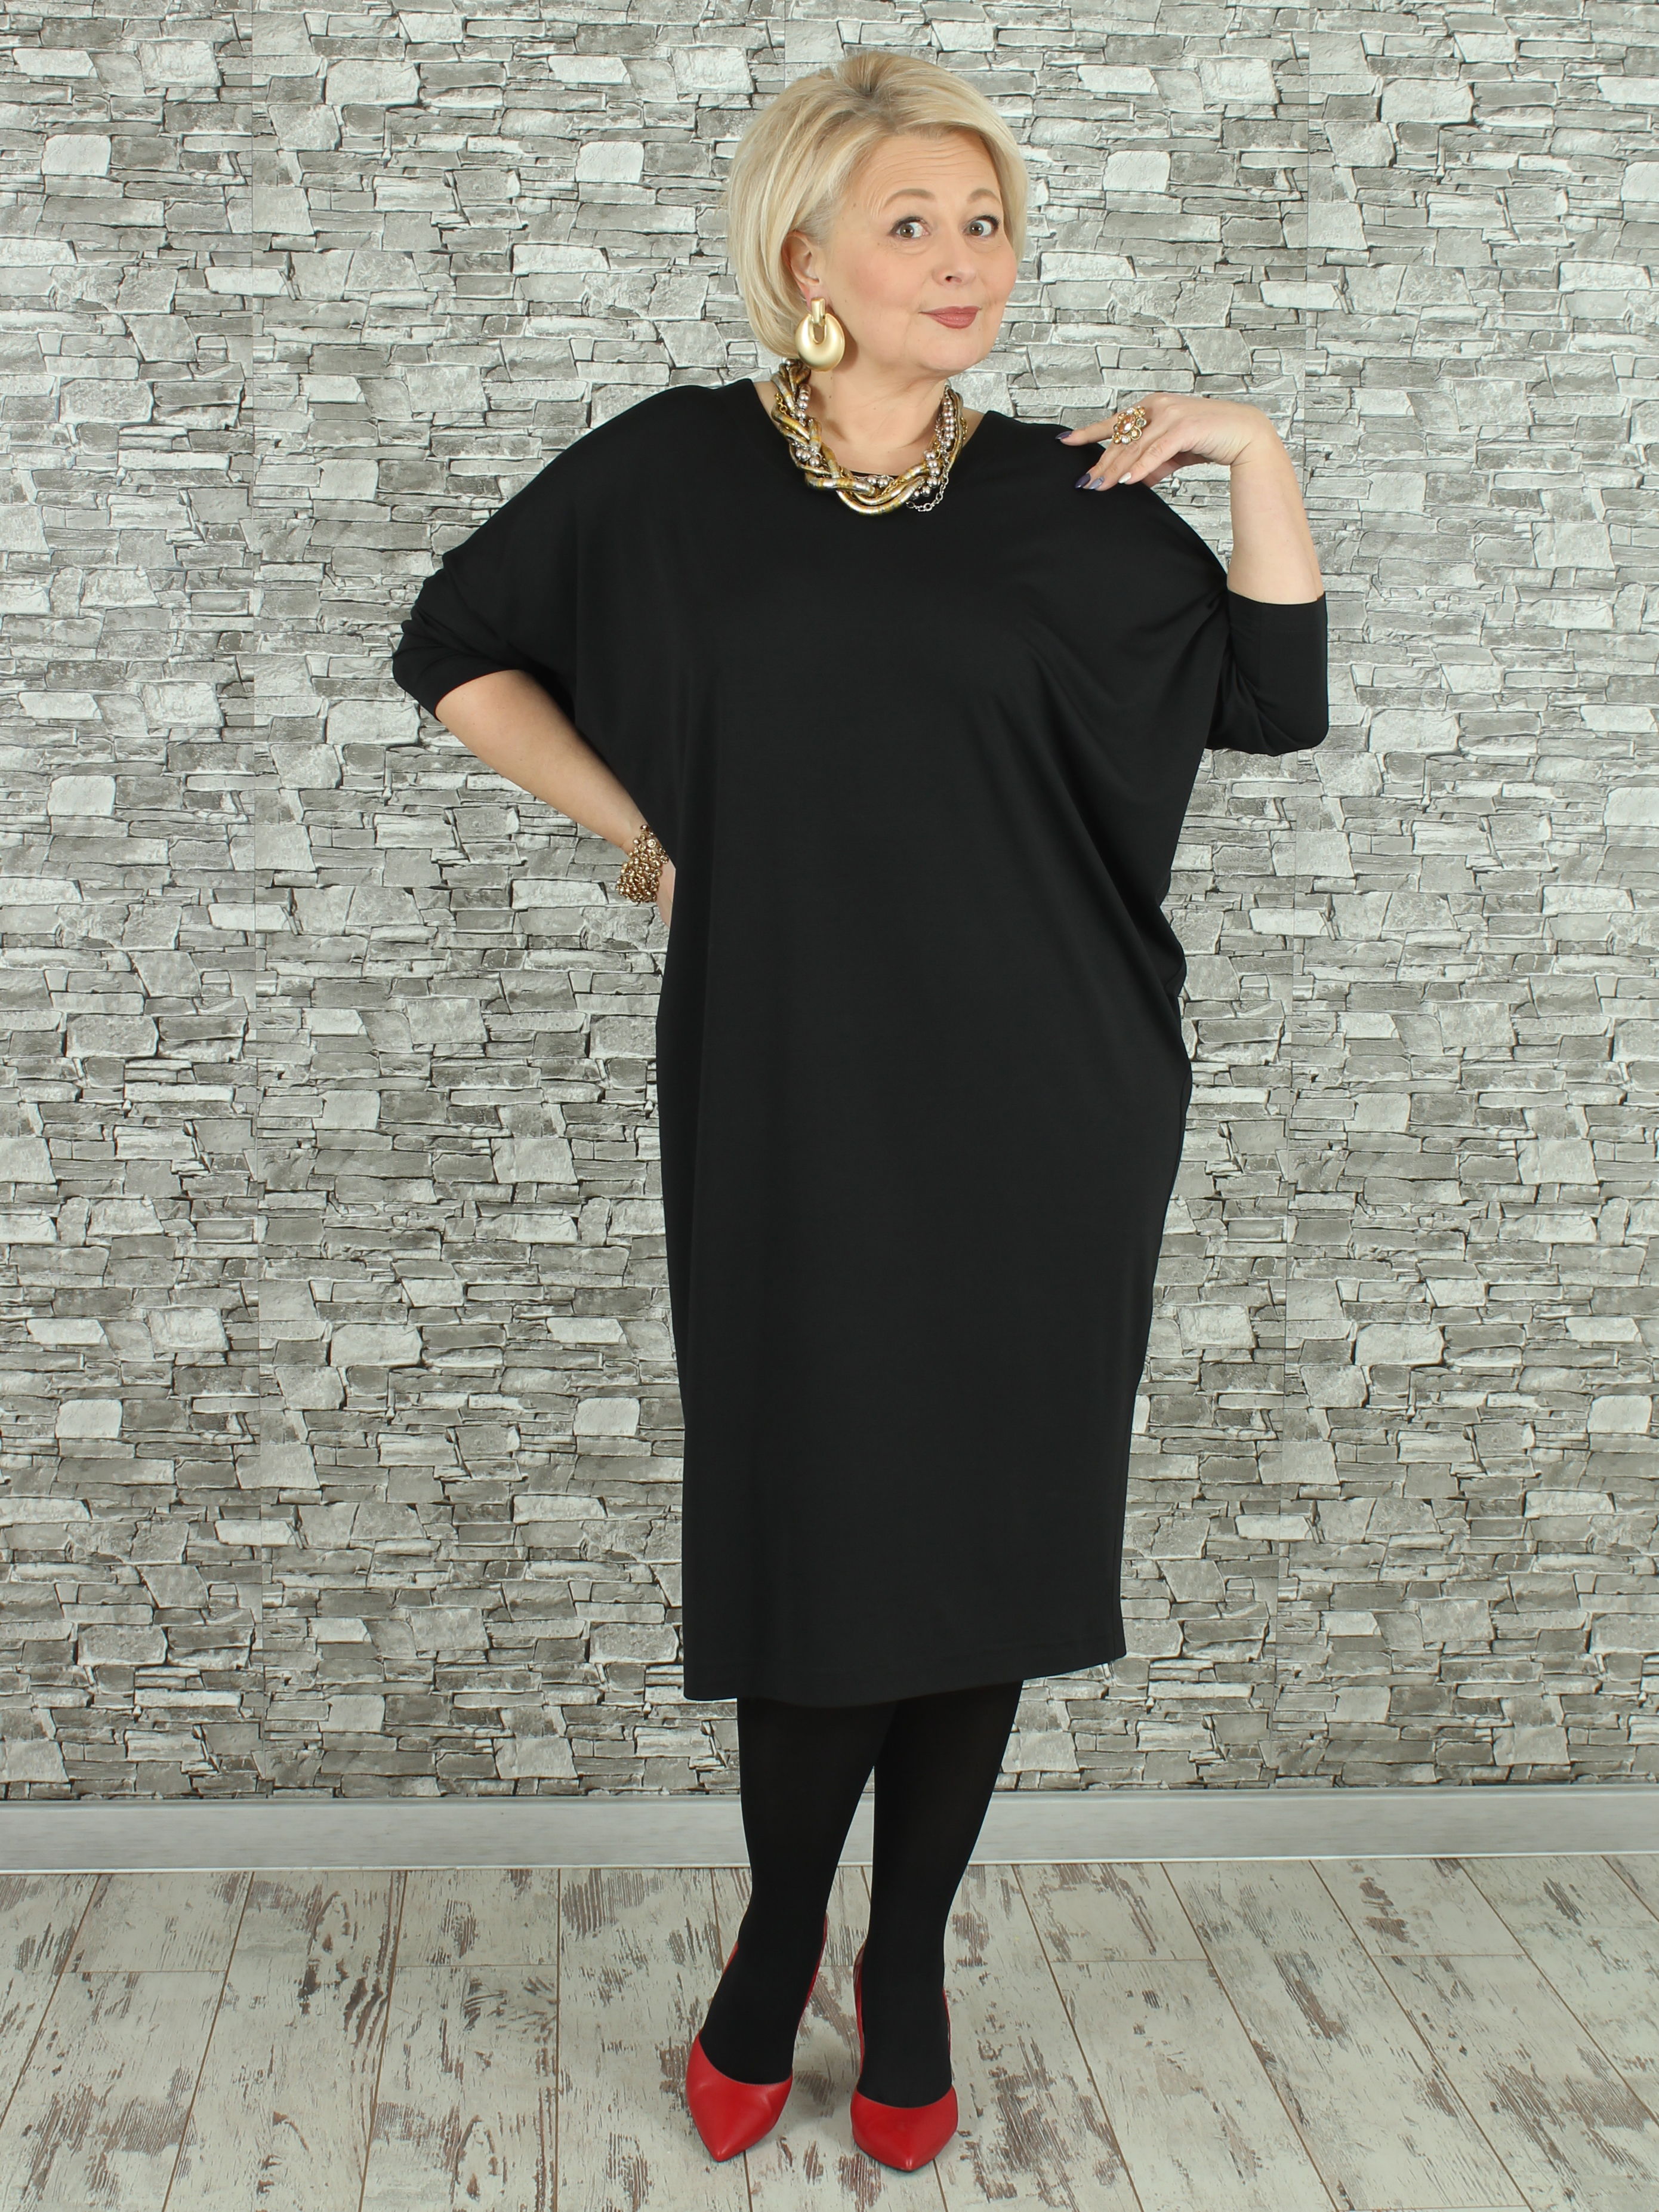 Женское платье NadiN 1629/1 60 размер Чёрное